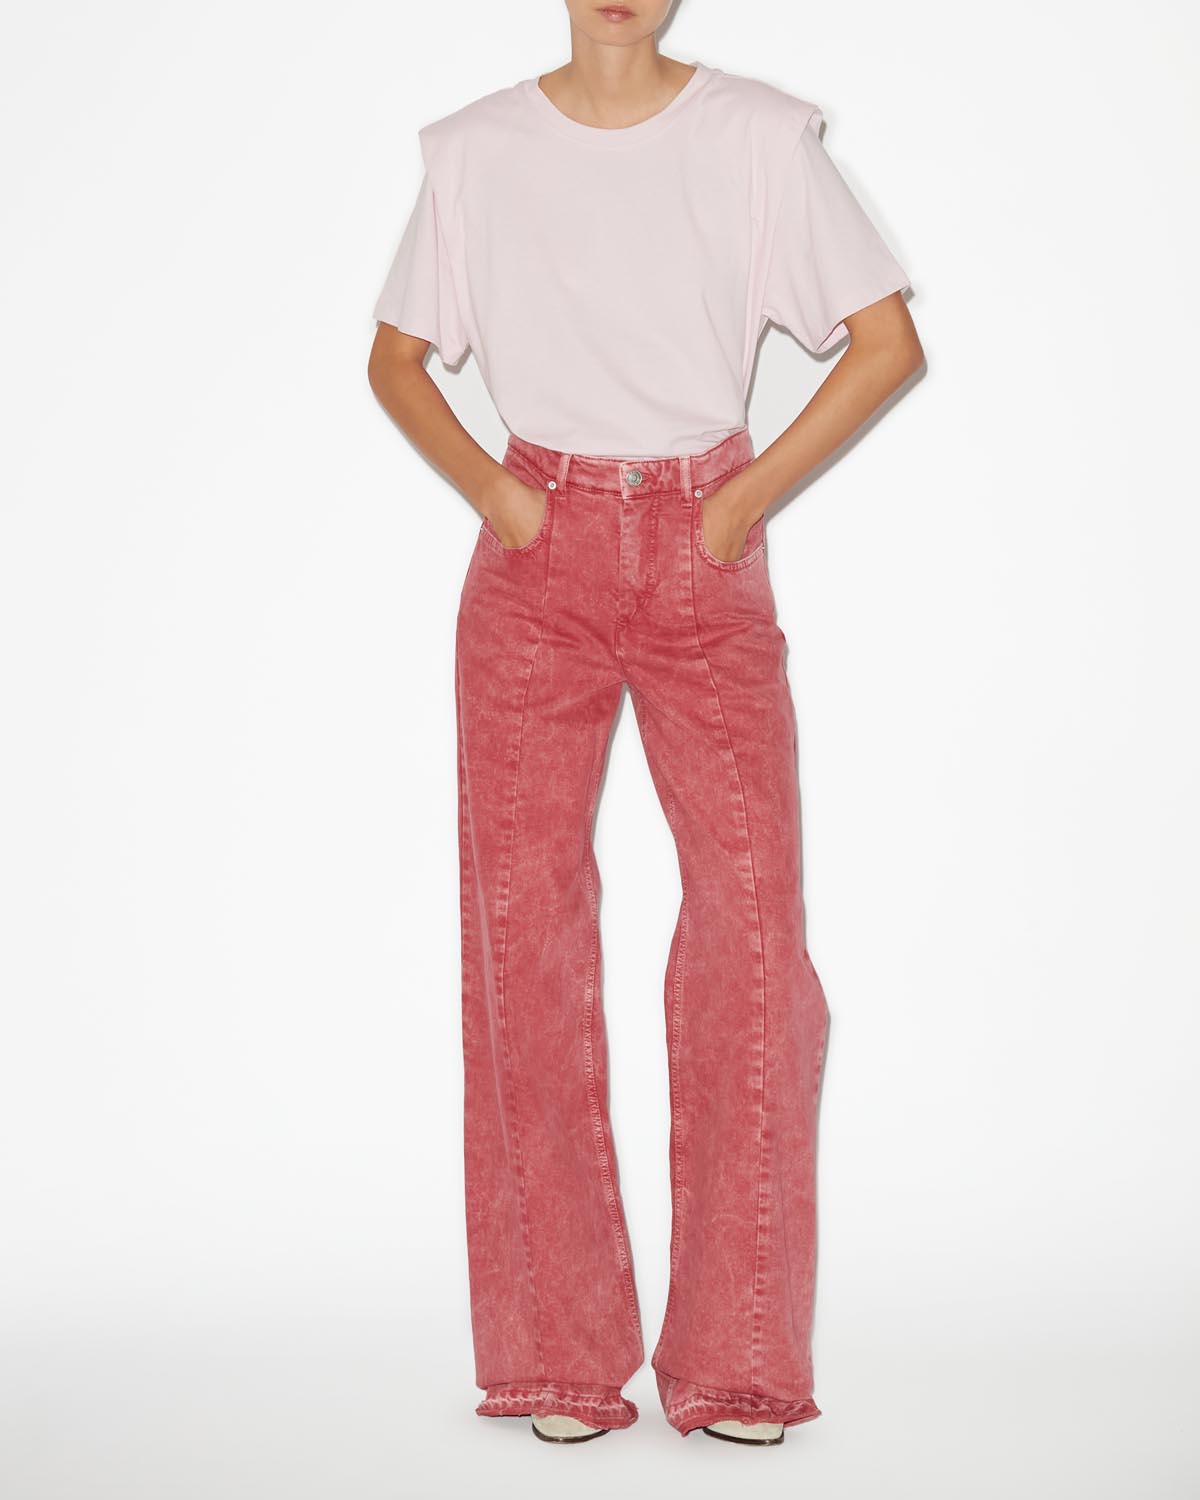 Zelitos tee shirt Woman Light pink 2